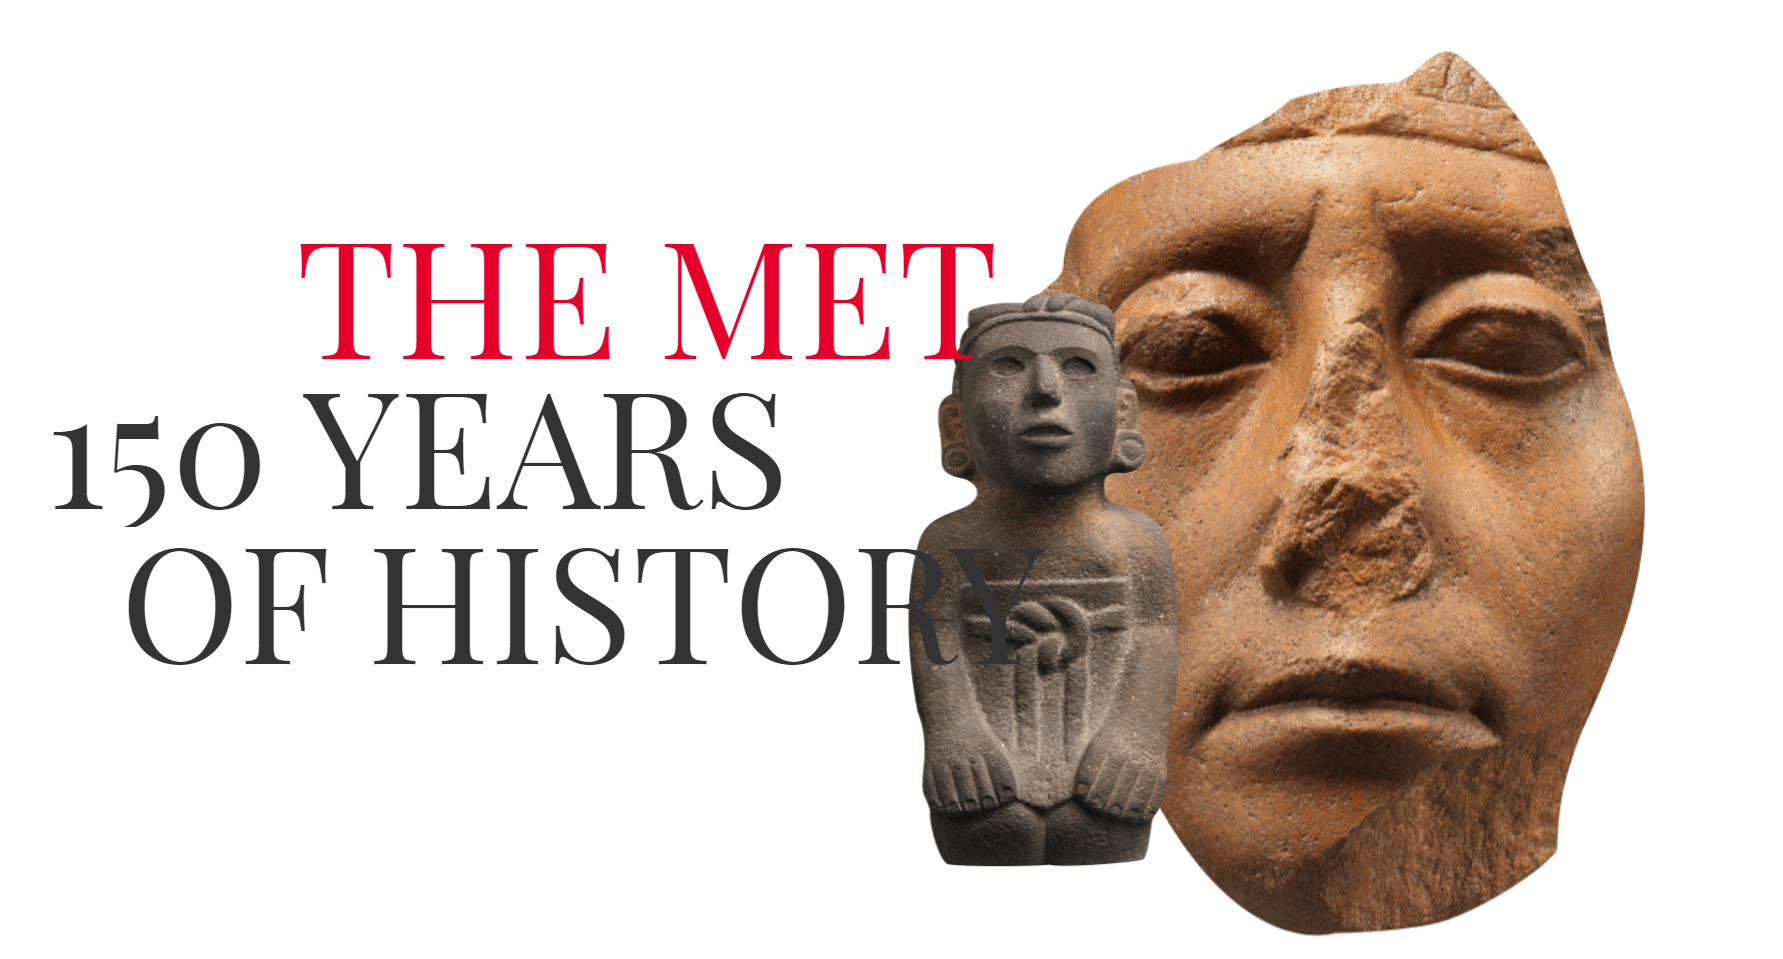 THE MET MUSEUM - Website of the Day